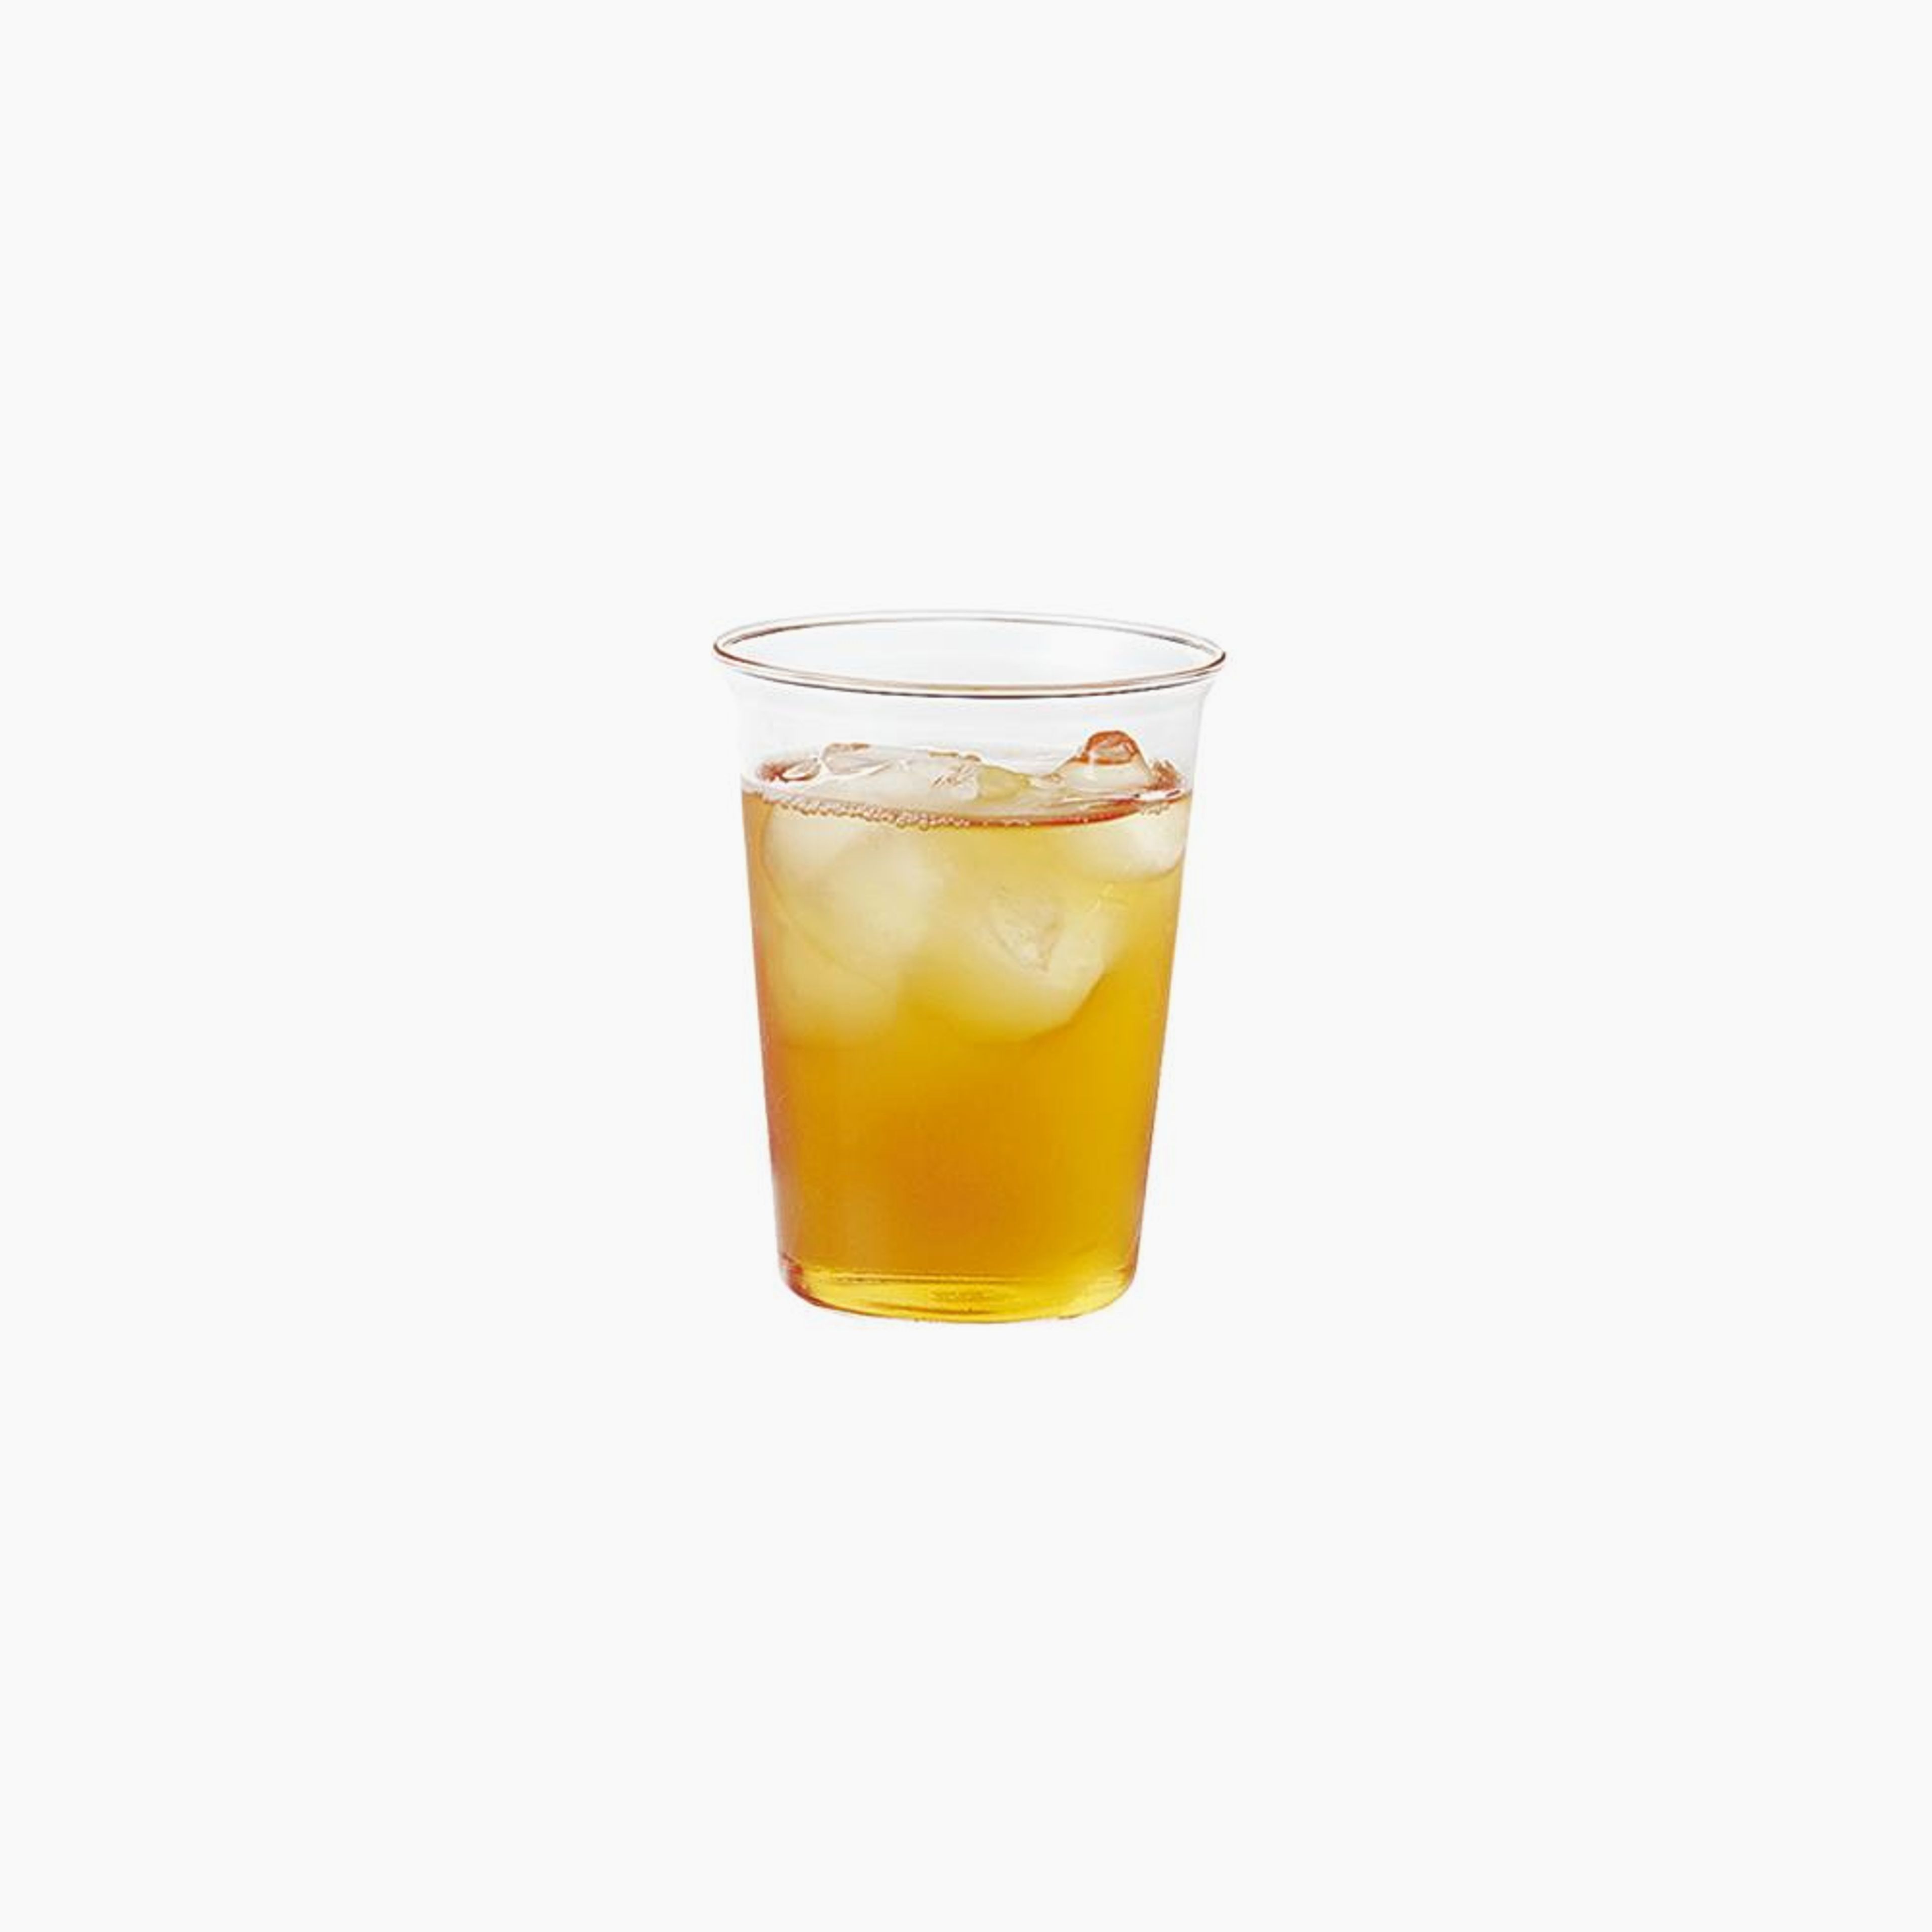 CAST iced tea glass 350ml / 12oz